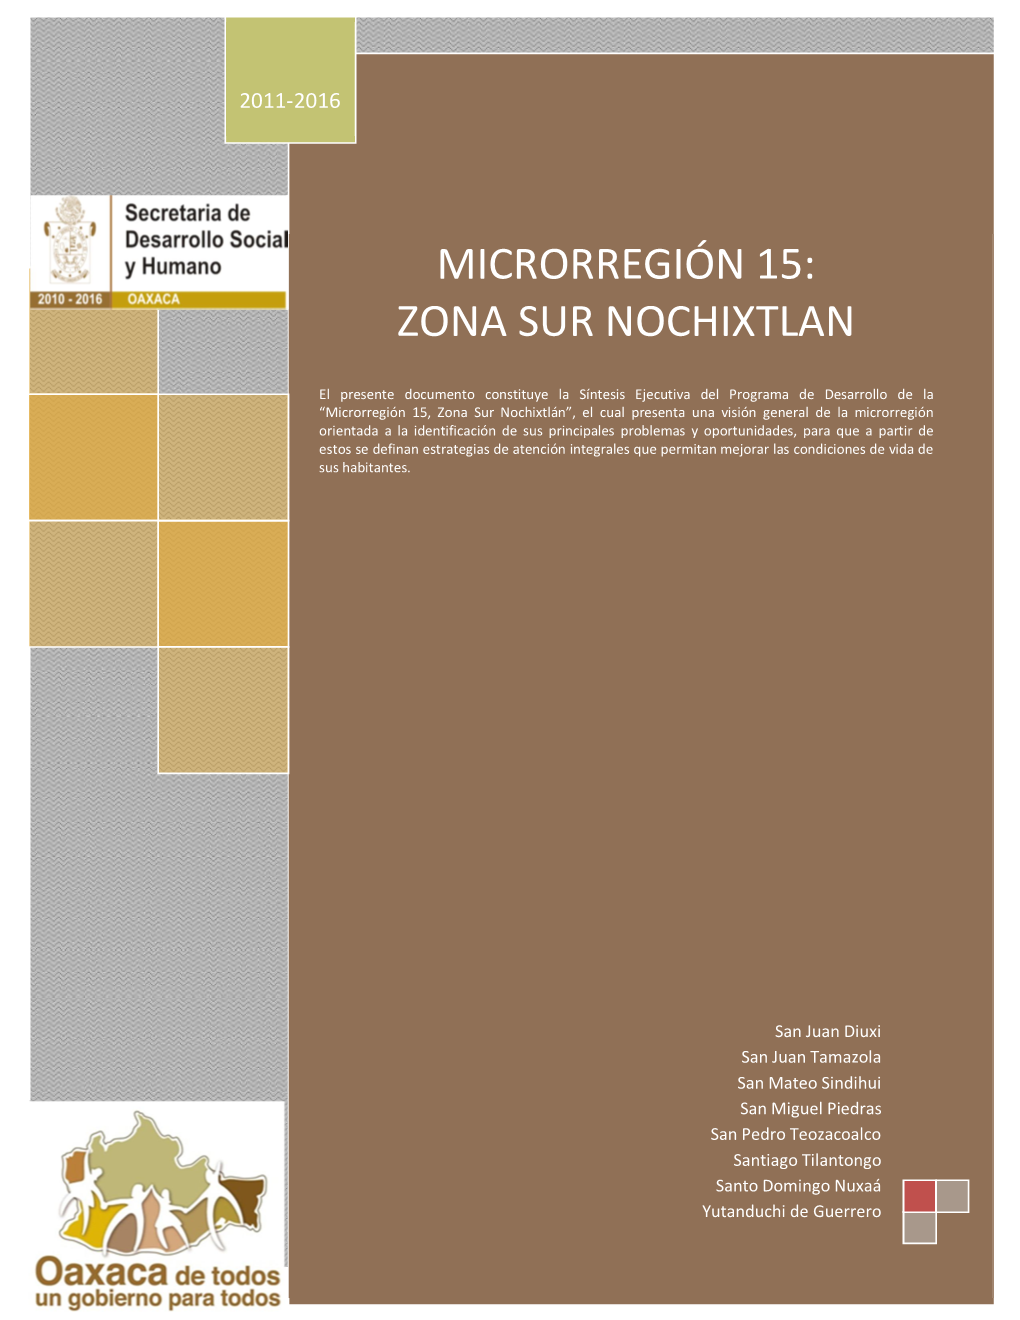 Microrregión 15: Zona Sur Nochixtlan